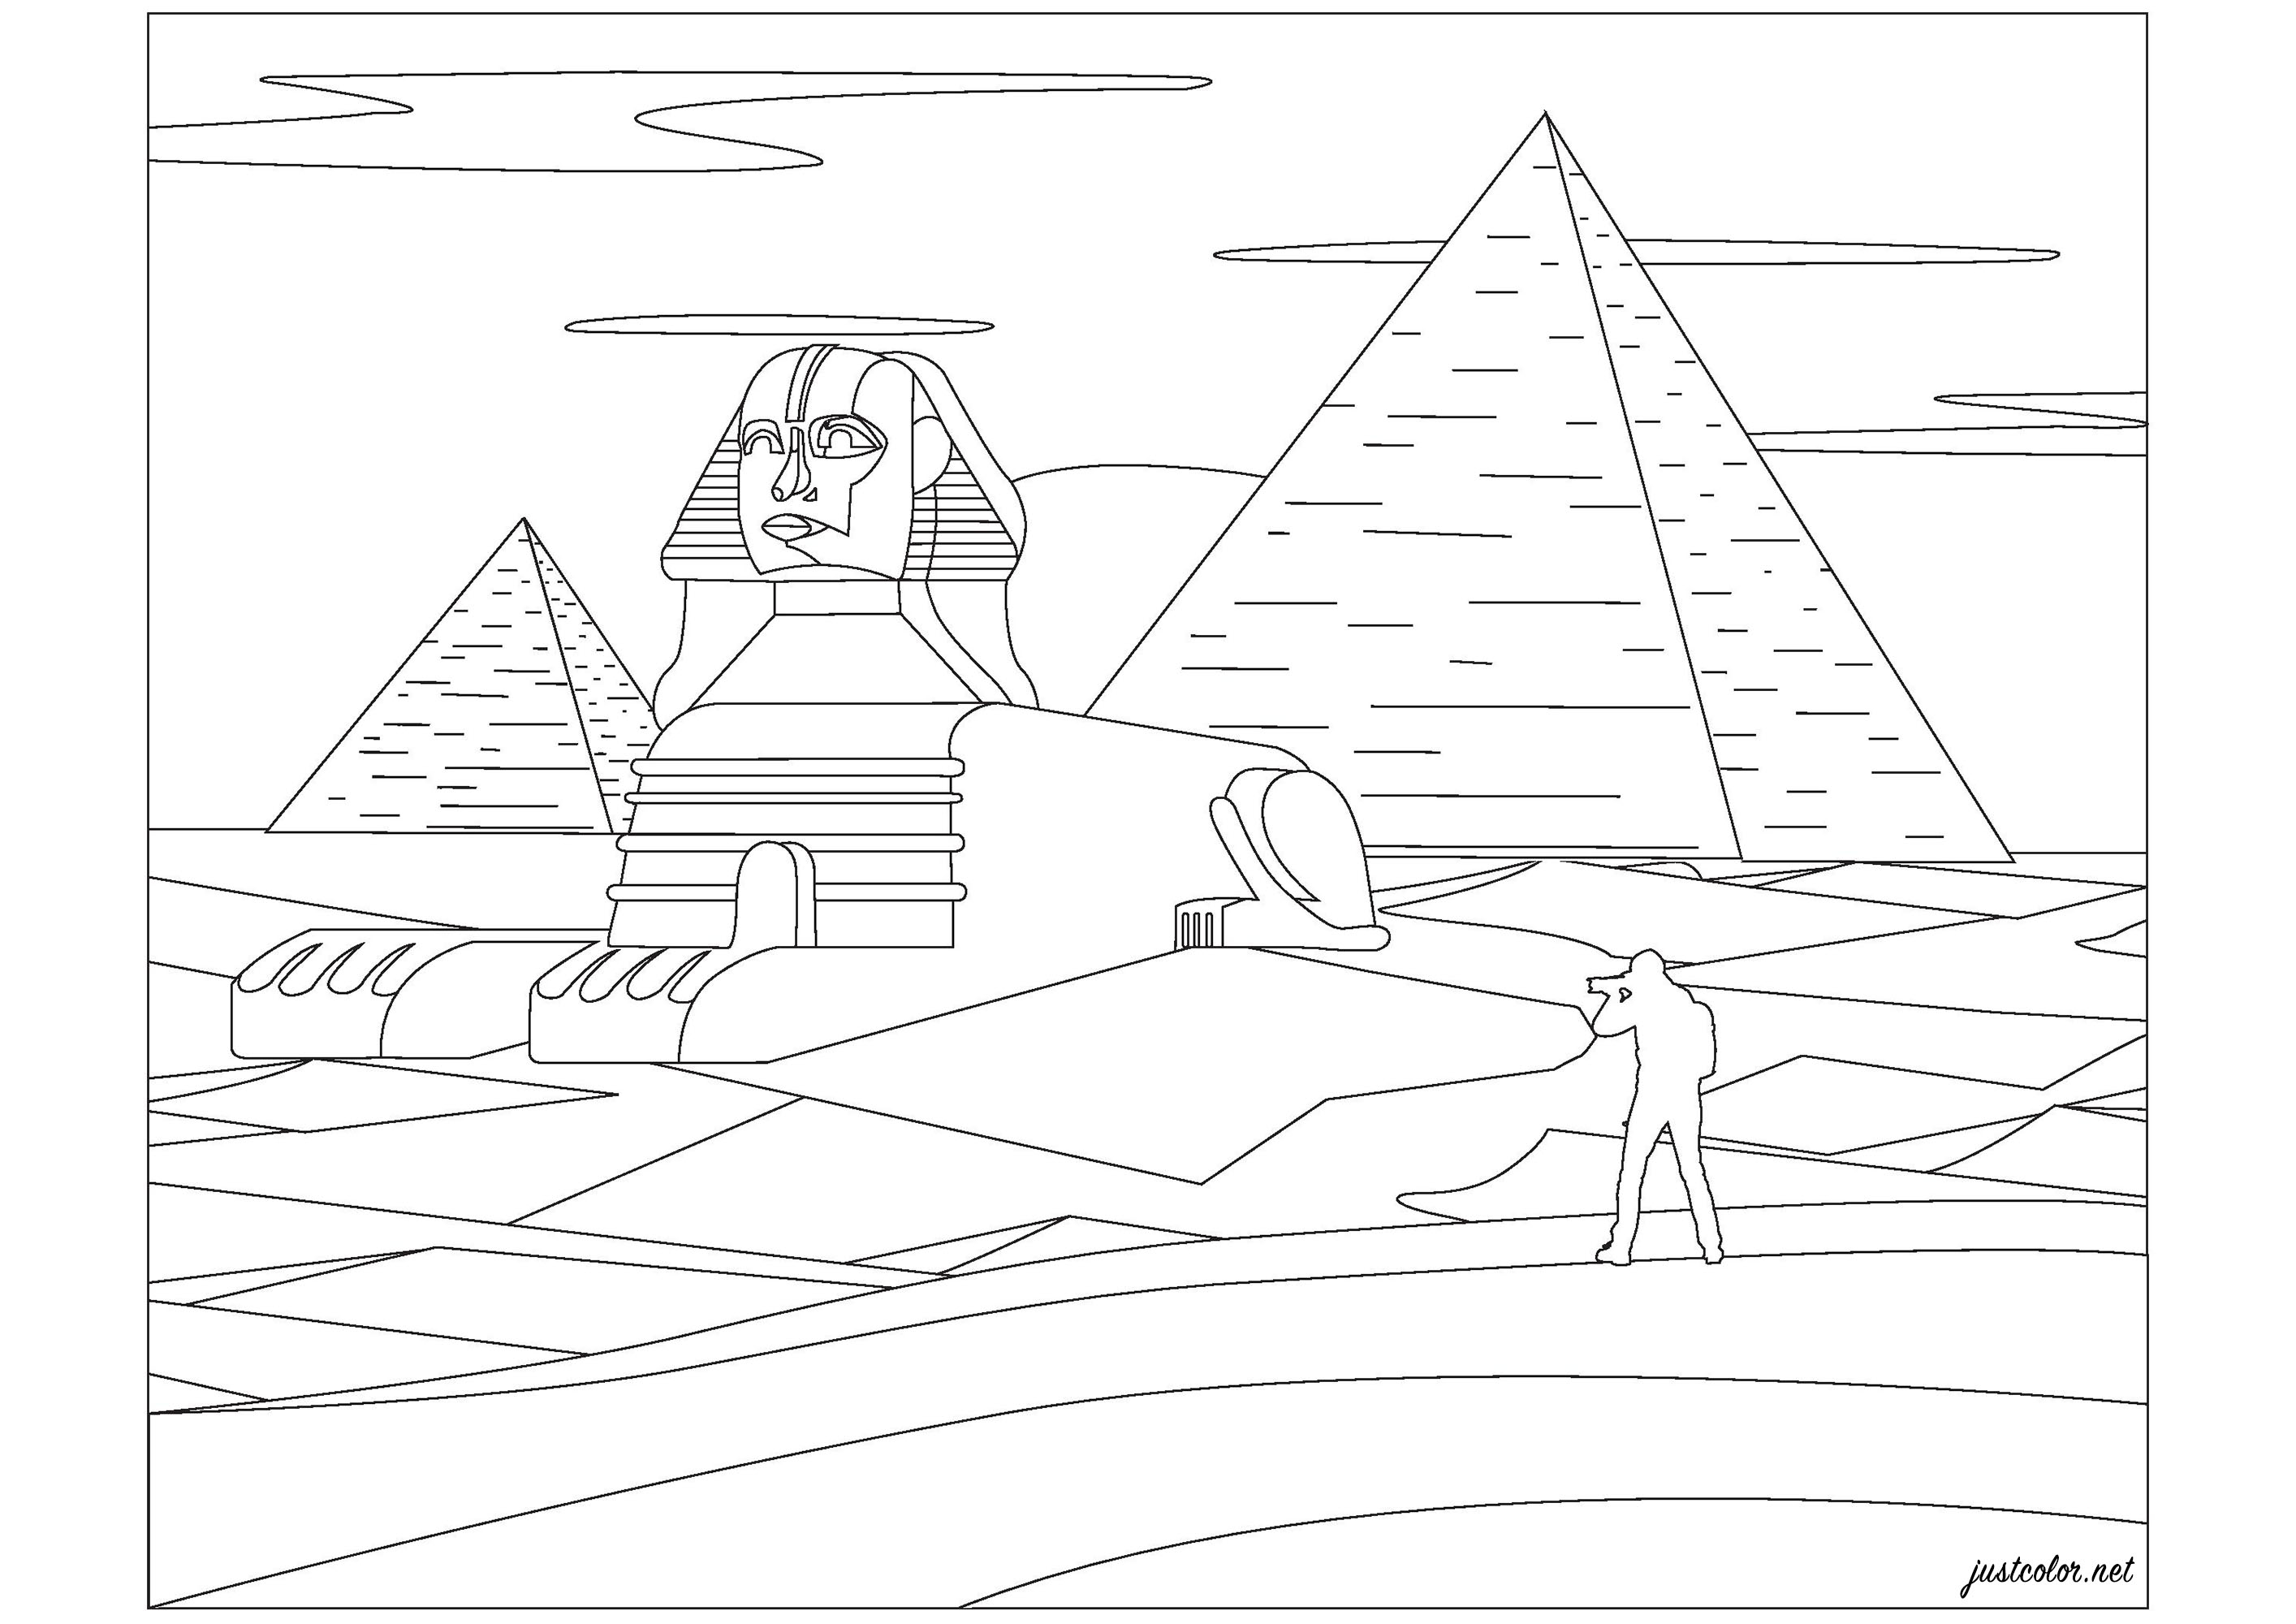 Pyramides de Gizeh et Sphinx, en Egypte. La grande pyramide de Gizeh a été construite il y a près de 3 000 ans avant notre ère par le pharaon Khéops. Concernant le Sphynx, ses mesures sont impressionnantes : 73,5 mètres de longueur, 14 mètres de largeur et 20,22 mètres de hauteur, Artiste : Pierre C